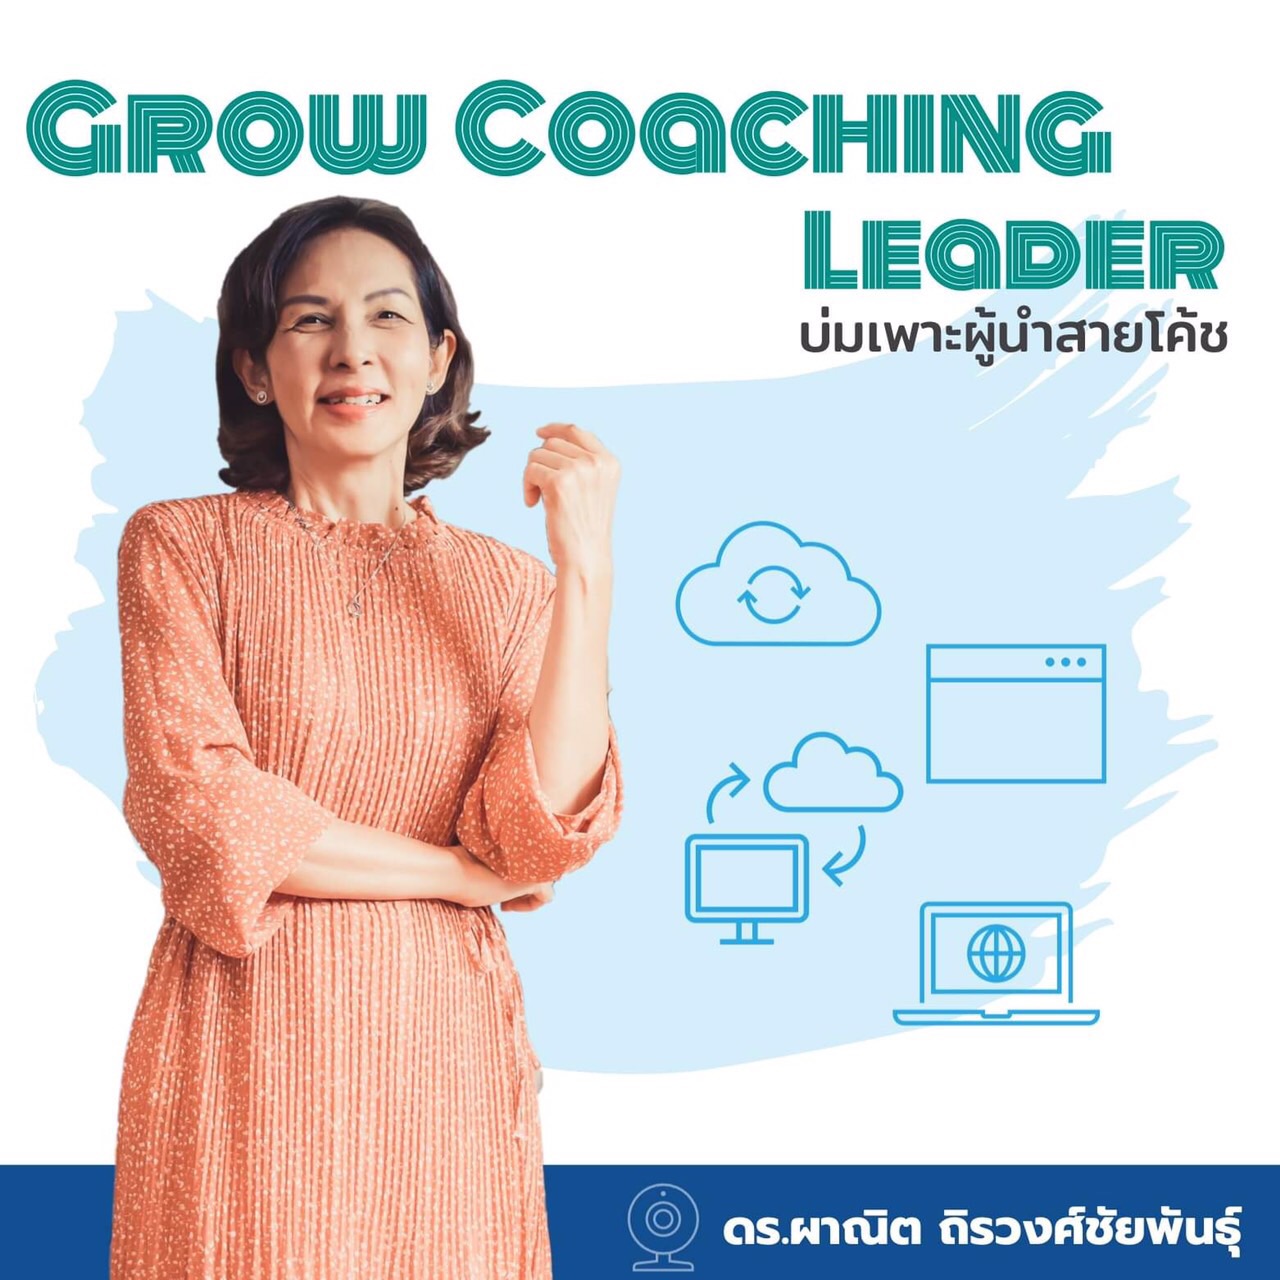 Grow Coaching Leader บ่มเพาะผู้นำสายโค้ช โดย ดร.ผาณิต ถิรวงศ์ชัยพันธุ์